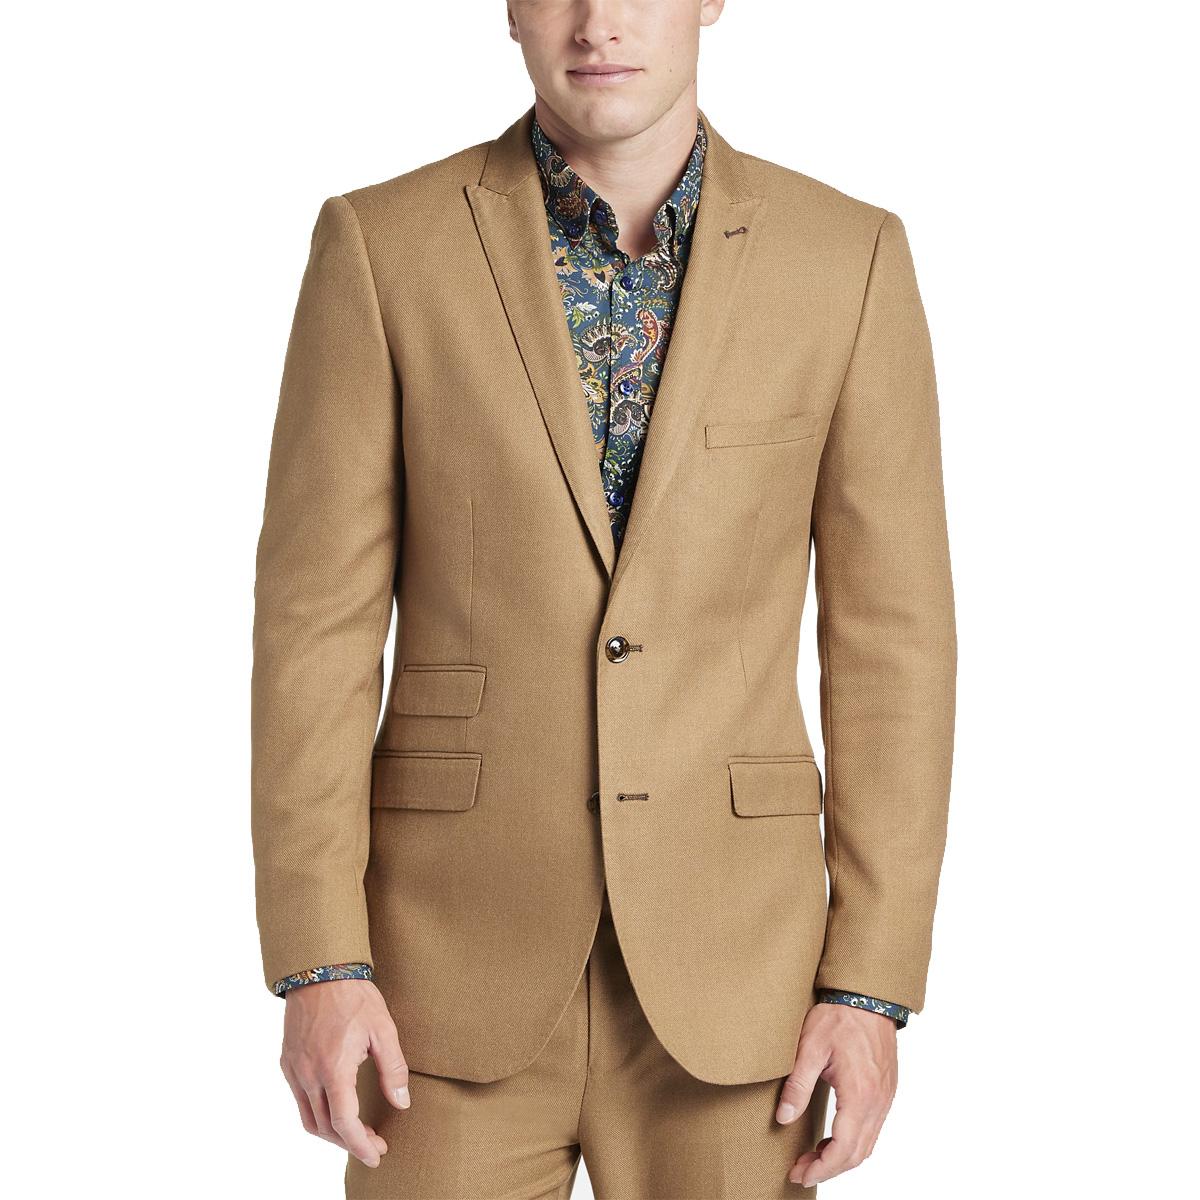 Paisley and Gray Slim Fit Peak Lapel Suit Jacket Deals